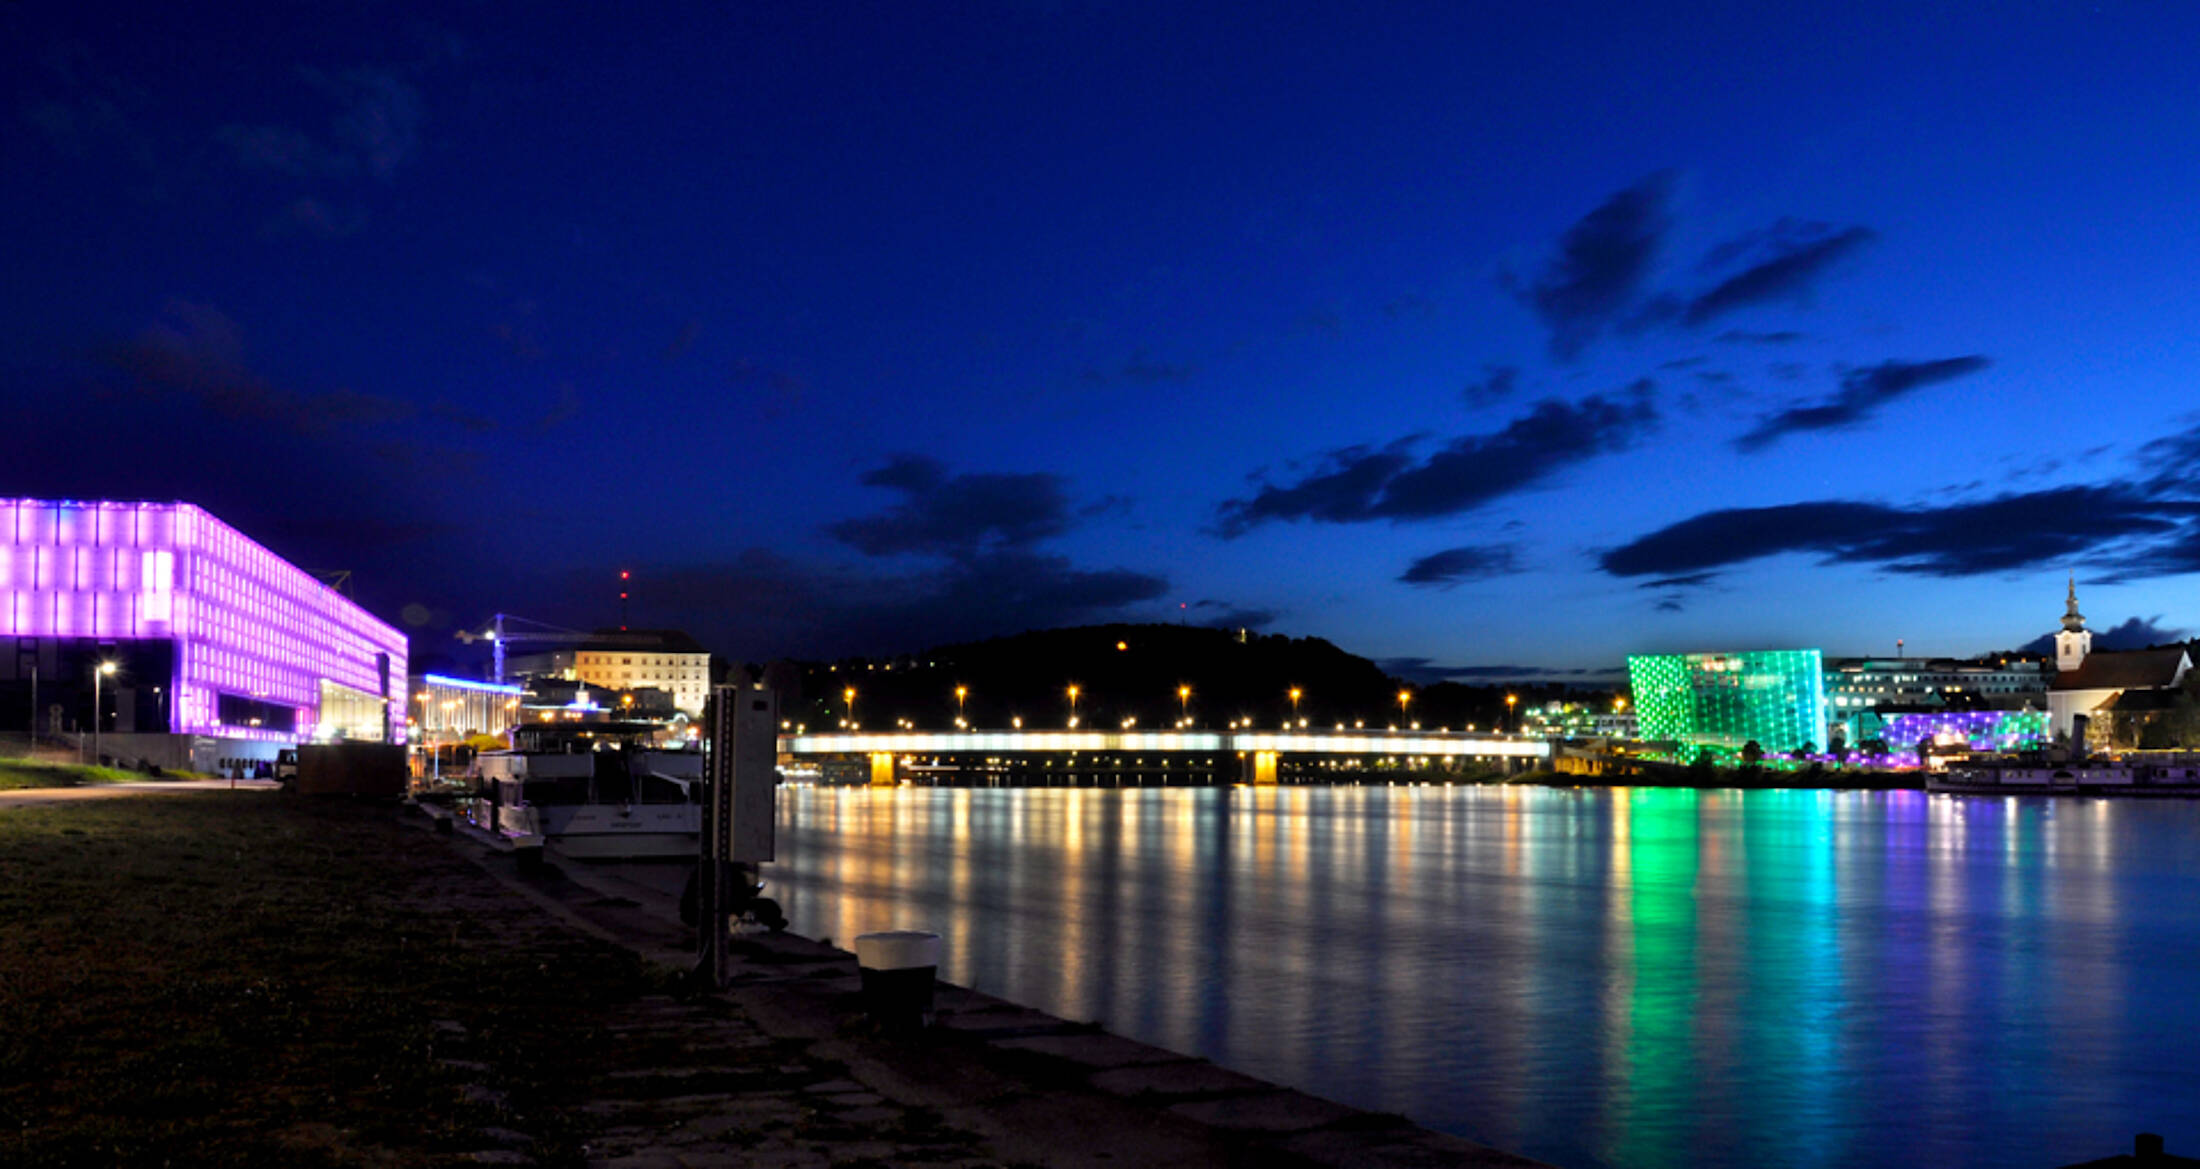 Ein buntes Lichterspiel an der Donau nach Sonnenuntergang.